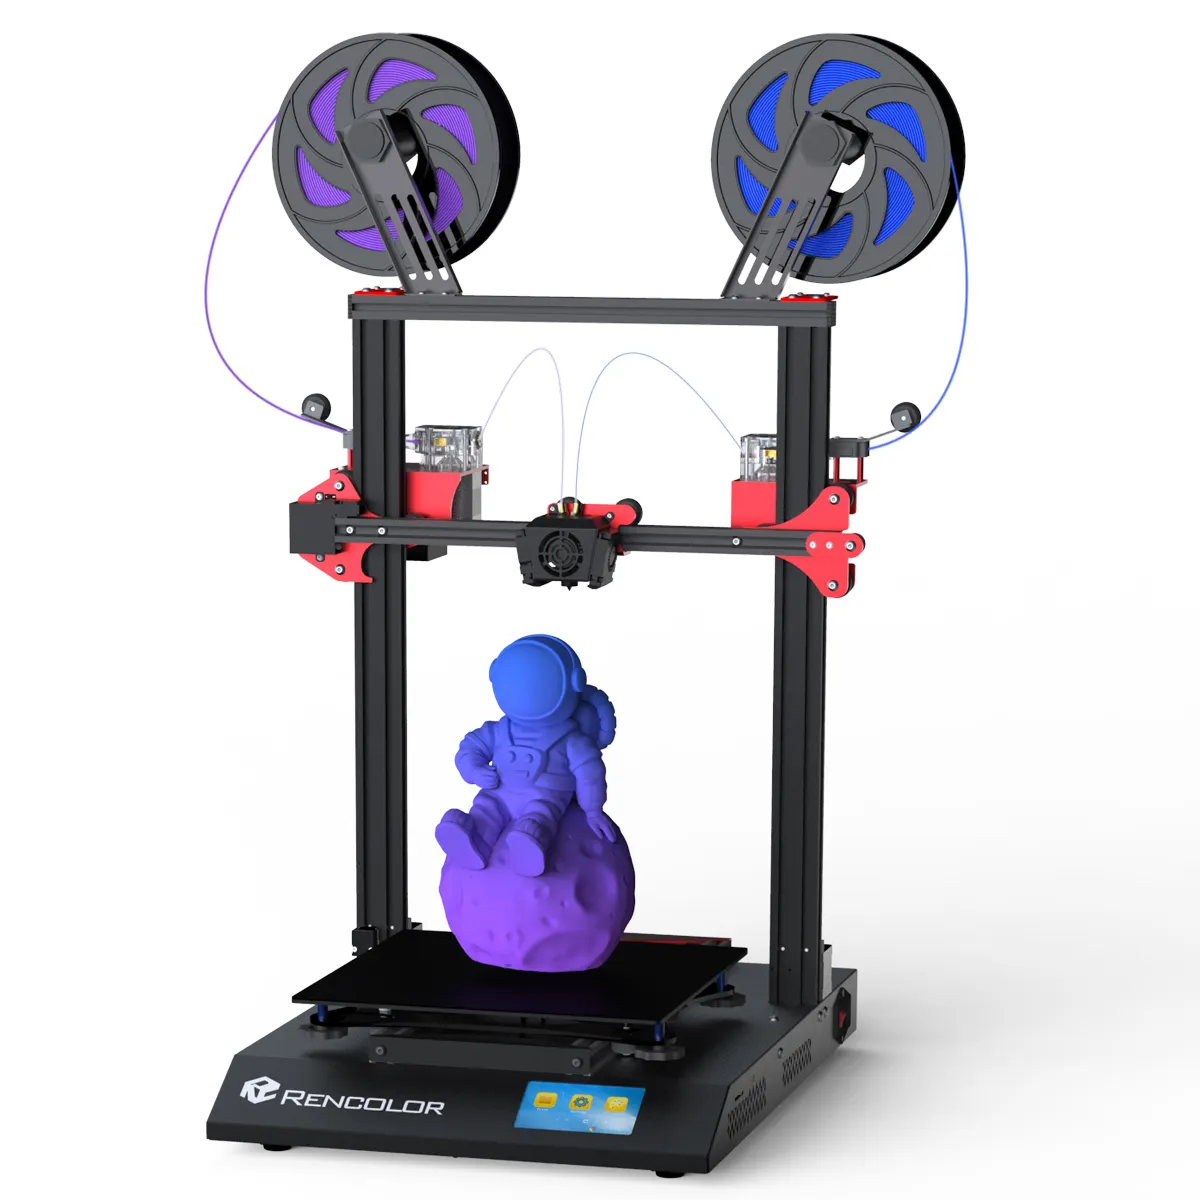 RENCOLOR AC-10 Color Mixing FDM 3D Printer with Two Color Mix Gradient Print multicolor Educational 4k 3D Color printer